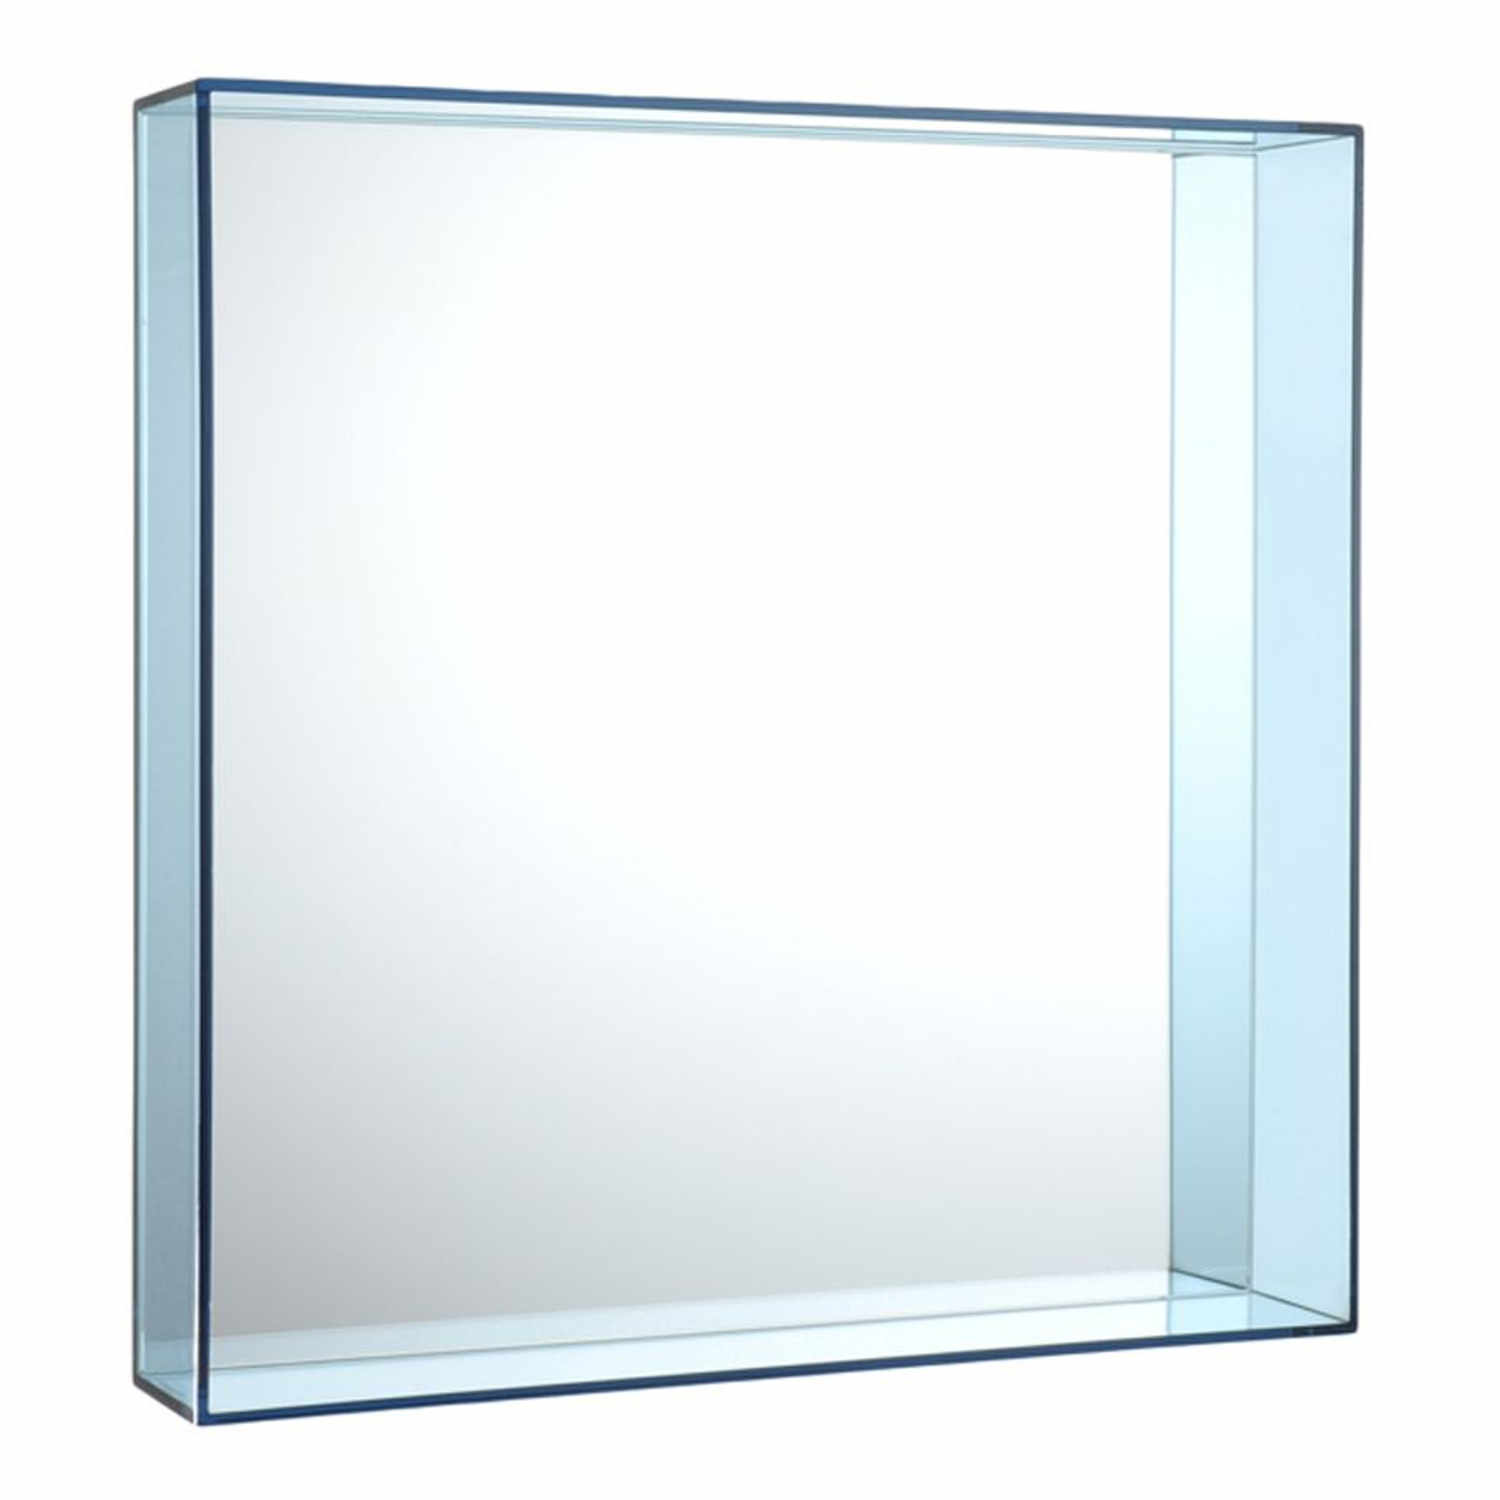 Only Me Wandspiegel, Farbe transparent/hellblau, Grösse h. 50 x t. 9 x b. 50 cm von Kartell